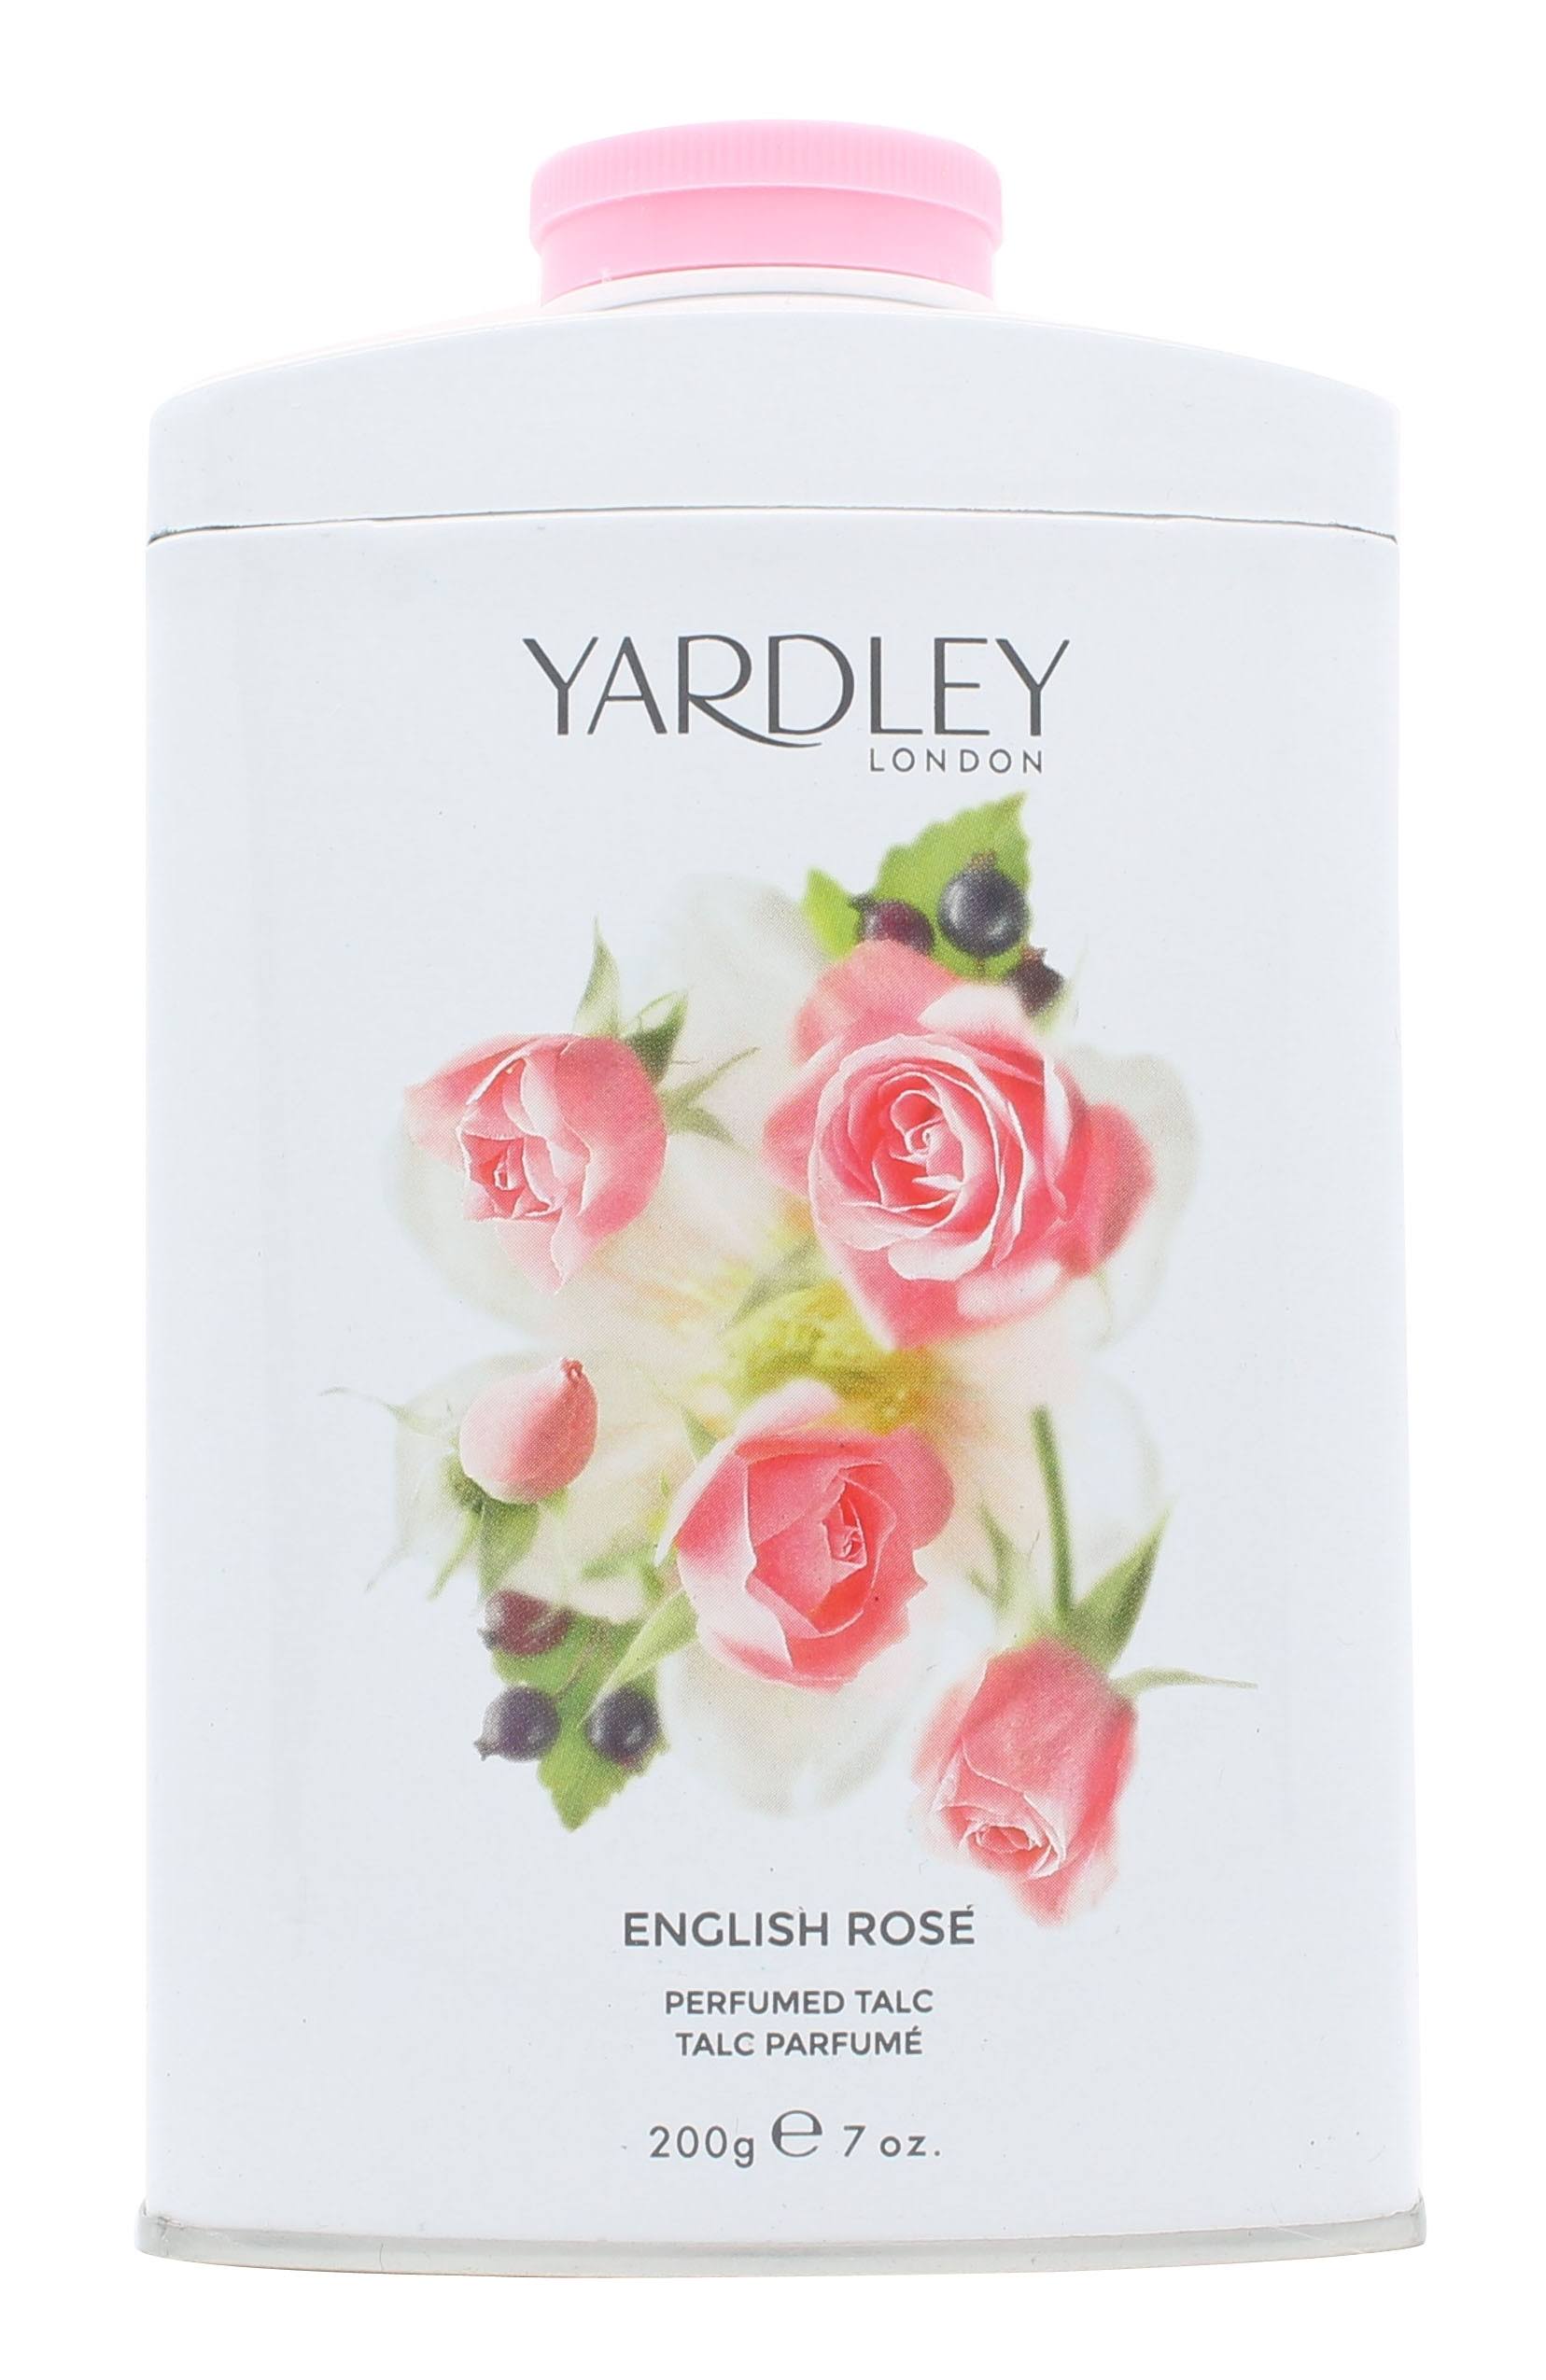 Yardley London Perfumed Talc - English Rose, 200g